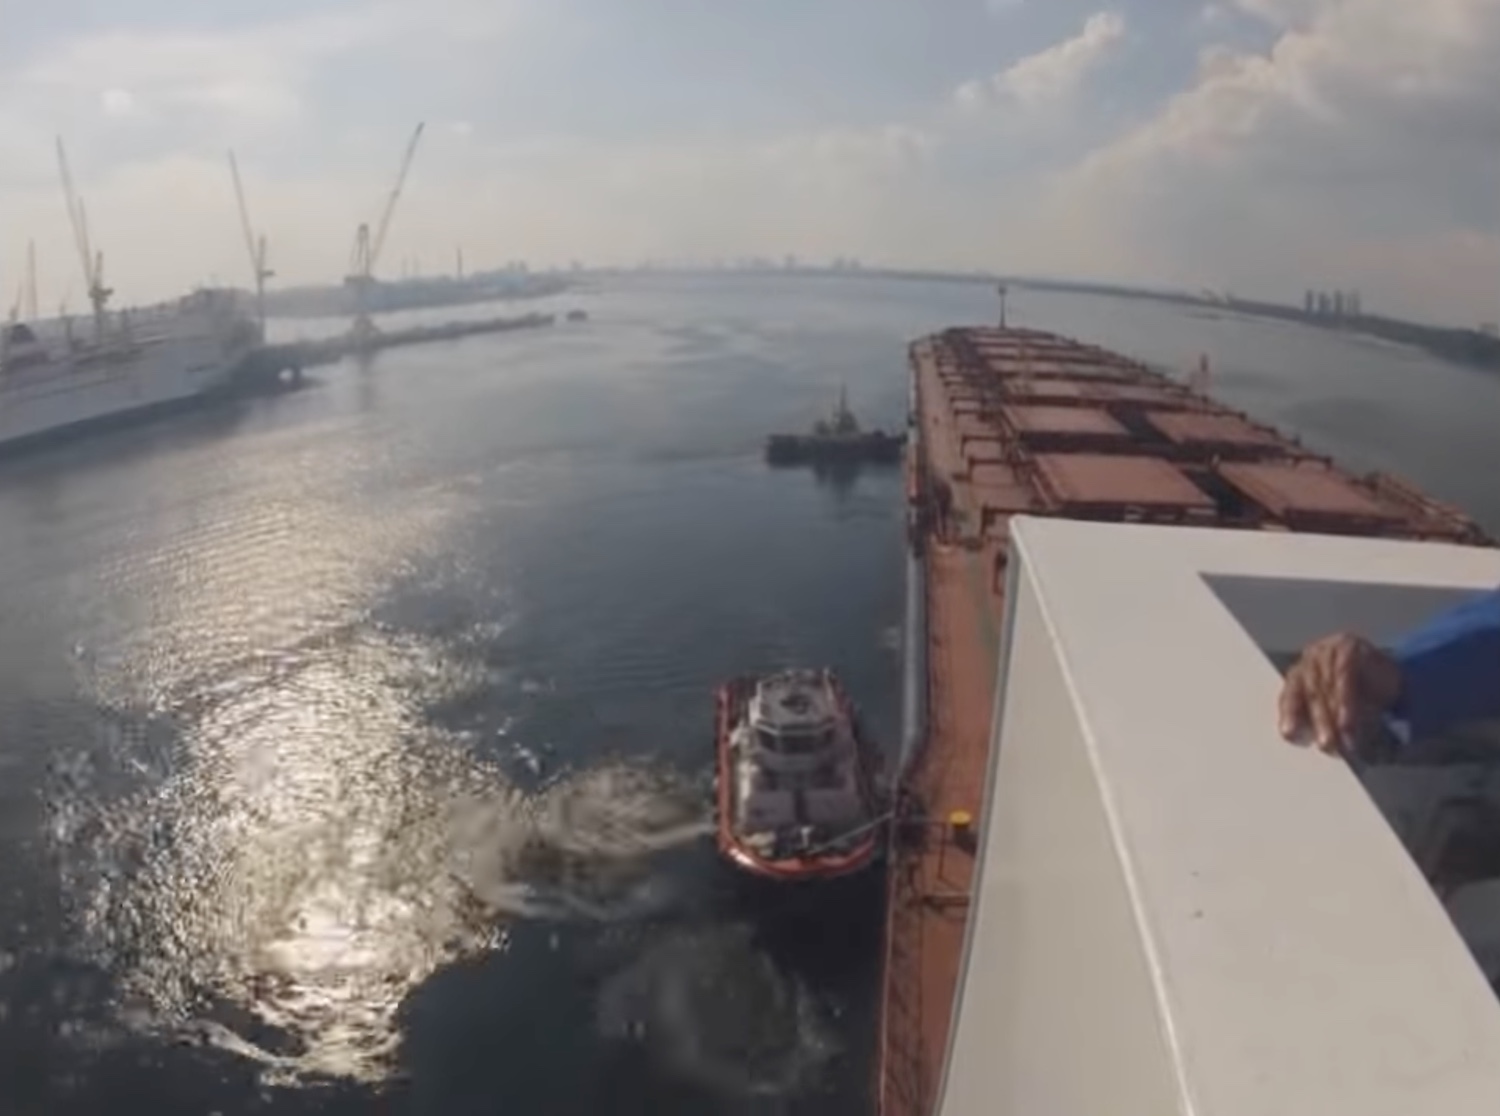 Φορτηγό πλοίο σε ναυπηγείο της Σιγκαπούρης (Video) - e-Nautilia.gr | Το Ελληνικό Portal για την Ναυτιλία. Τελευταία νέα, άρθρα, Οπτικοακουστικό Υλικό